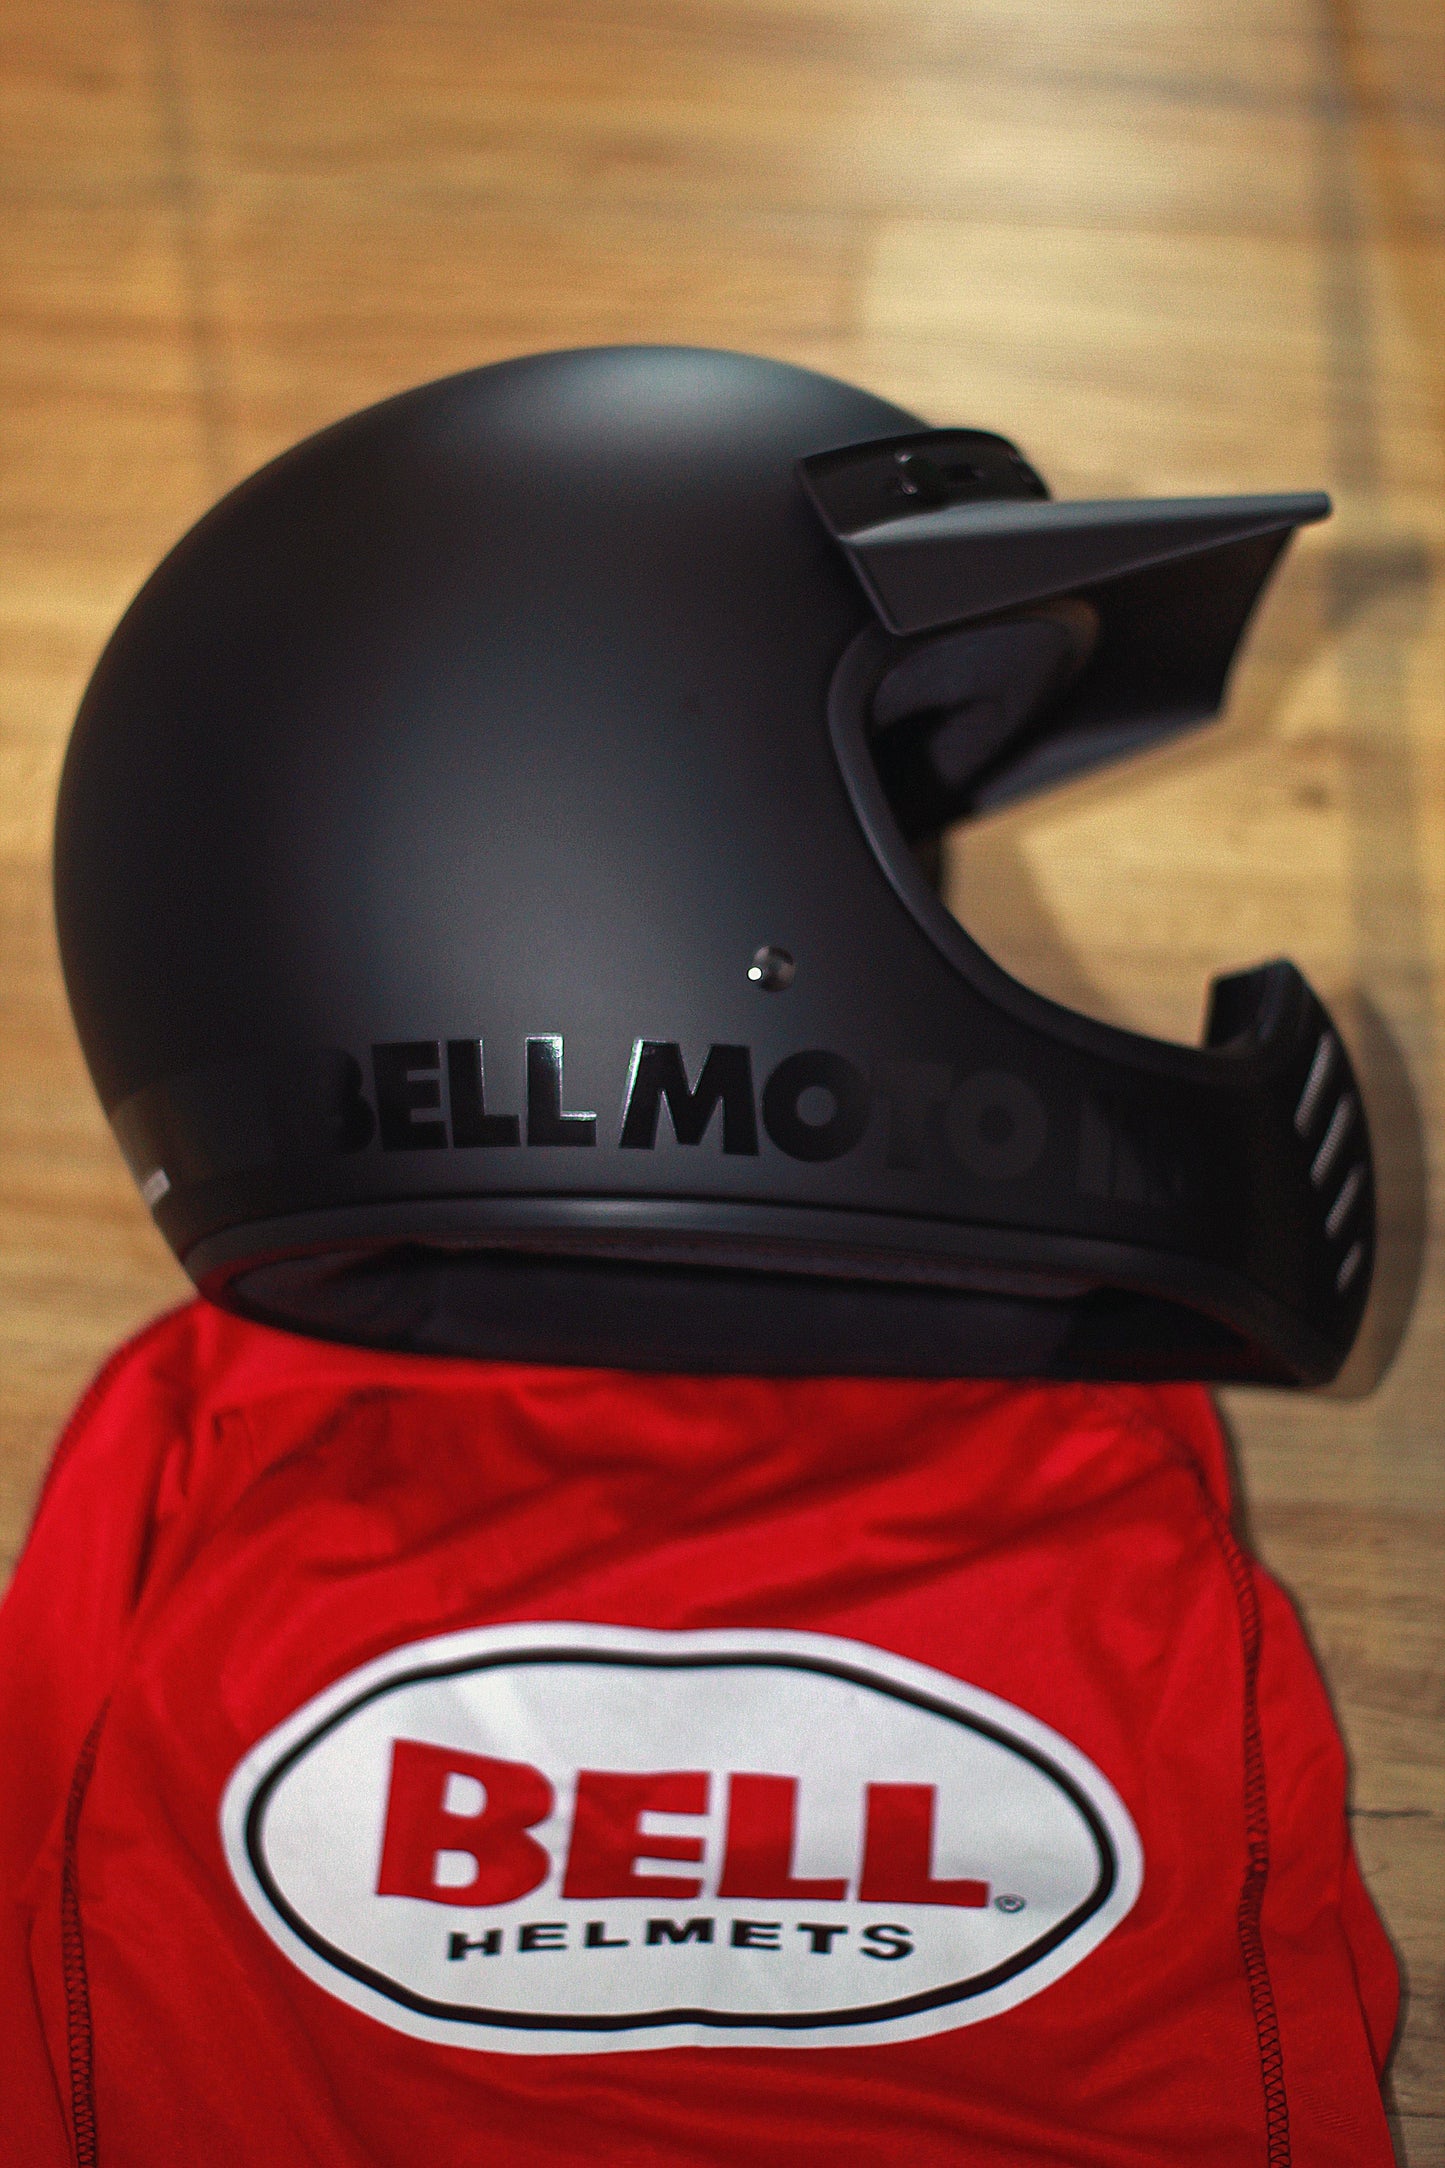 Bell Moto-3 (Classic Matte/Gloss Blackout) - Durian Bikers